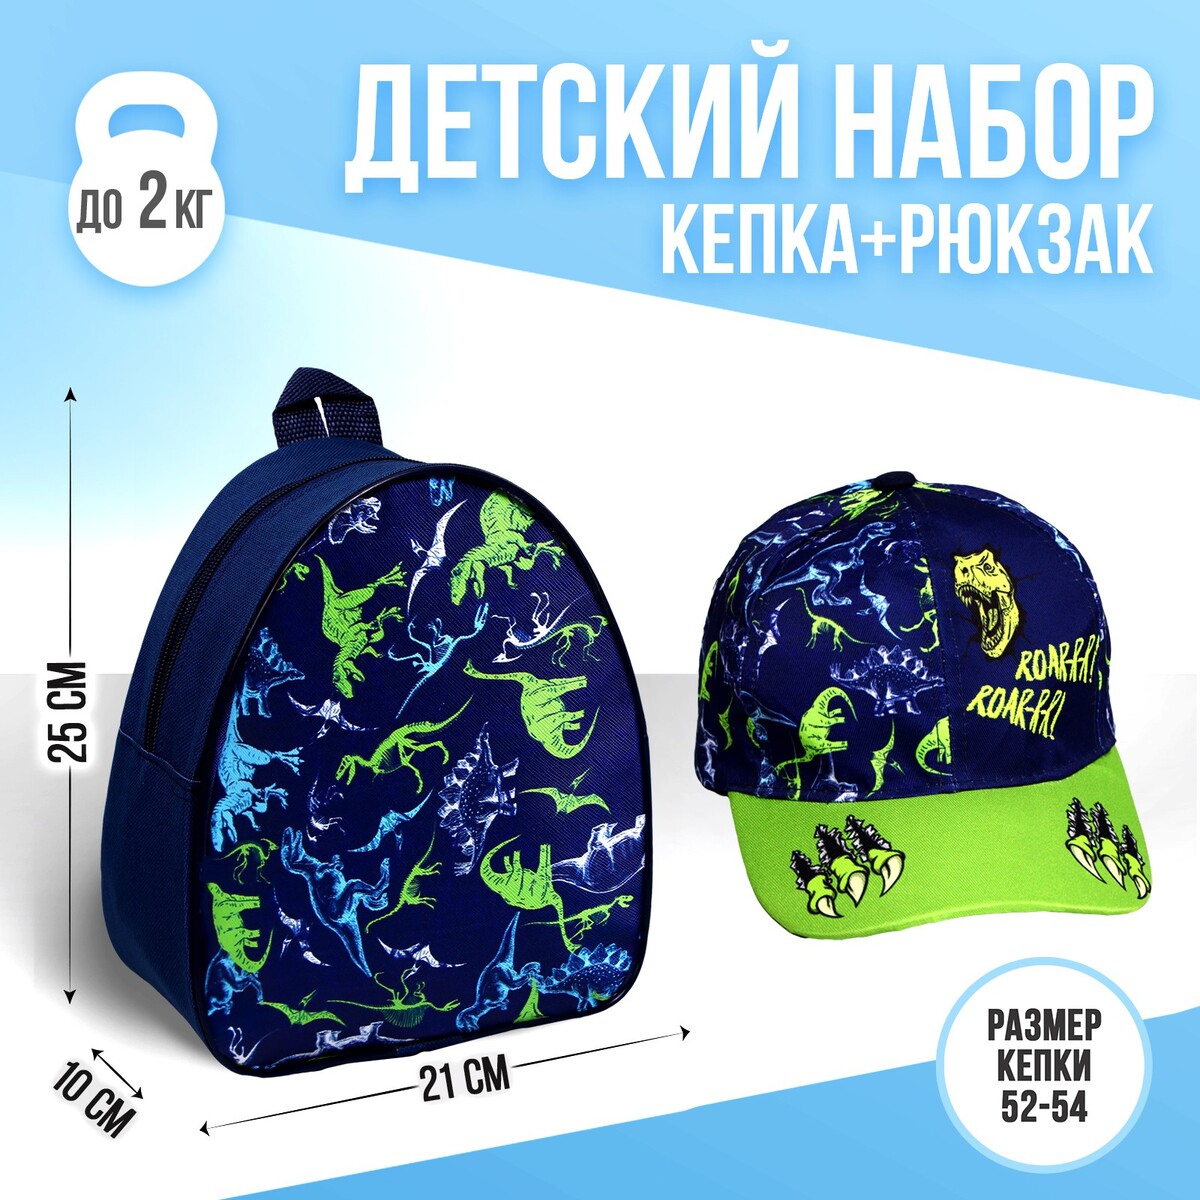 Детский набор roar, рюкзак, кепка рюкзак в походном стиле из коллекции kamchatka детский